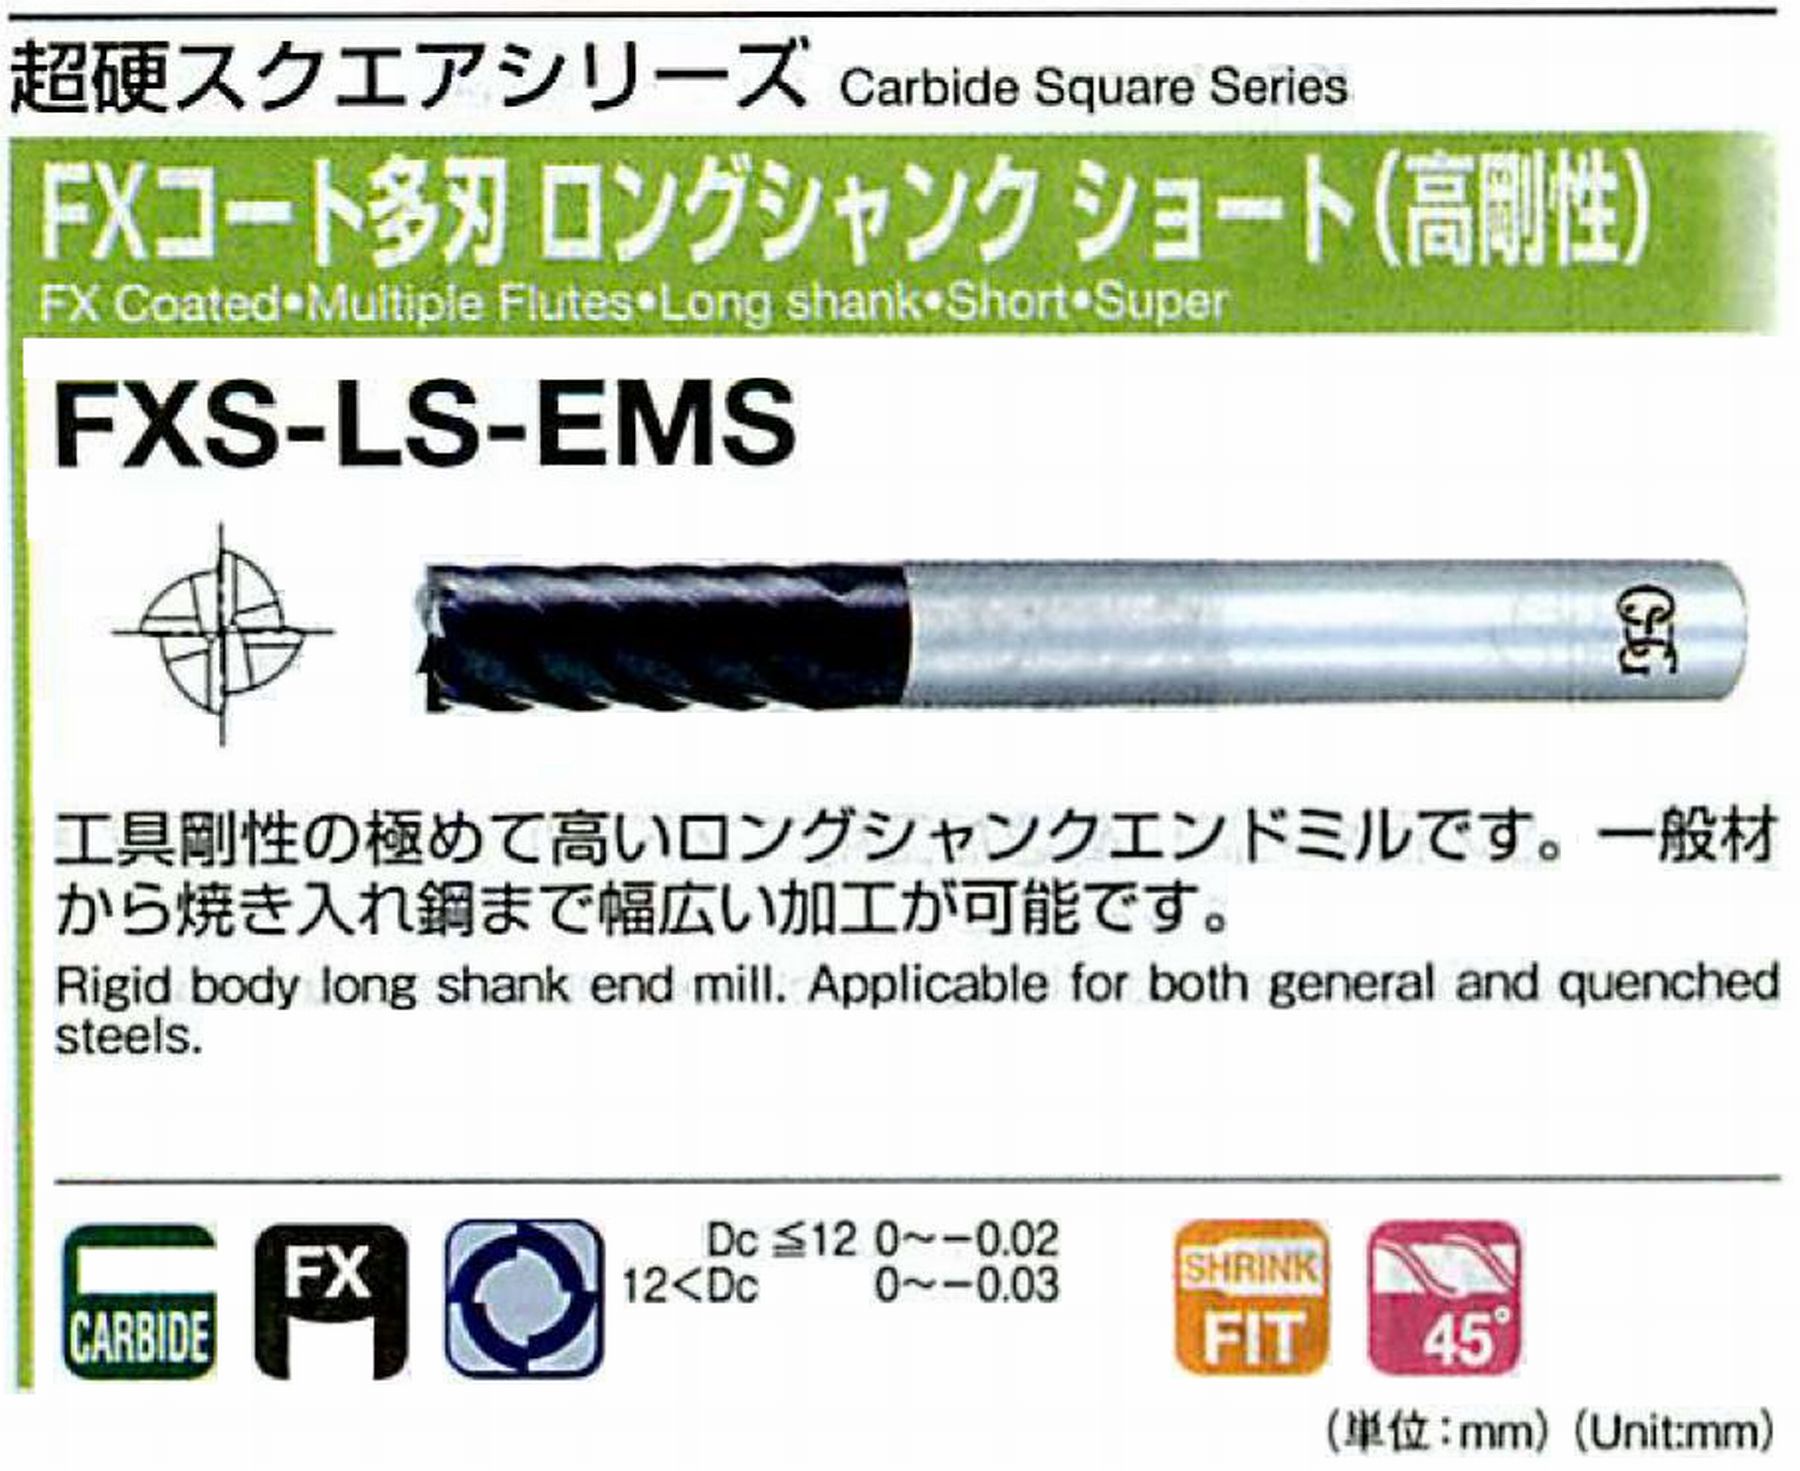 オーエスジー/OSG FXコート多刃 ロングシャンクショート(高剛性) FXS-LS-EMS 外径3 全長80 刃長10 シャンク径6mm 刃数4